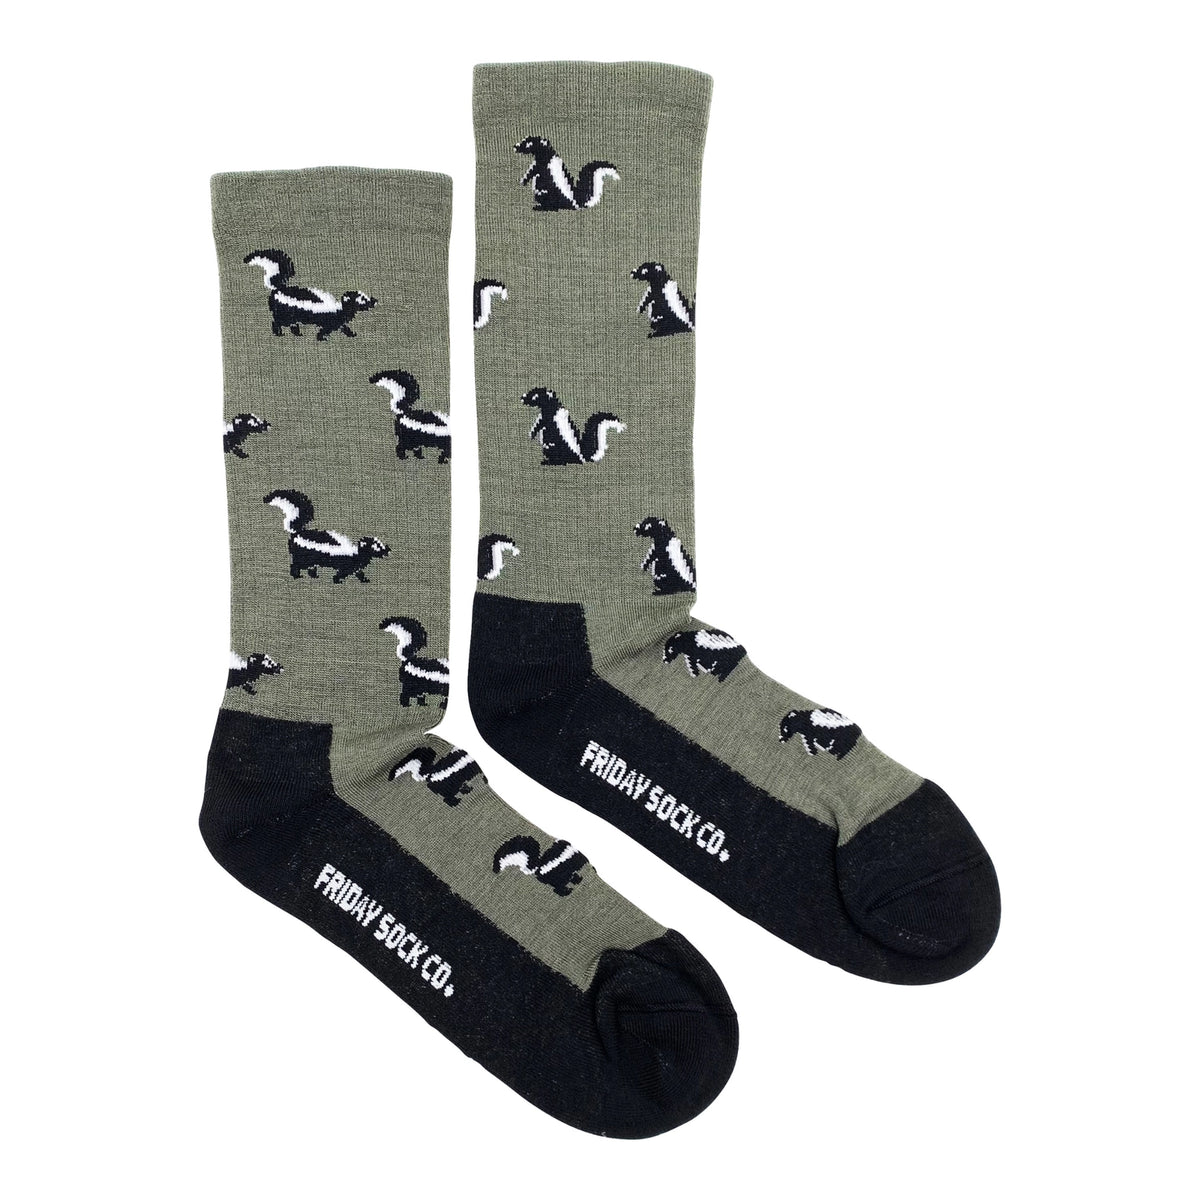 Friday Sock Co. - Men's Socks Skunk Mismatched